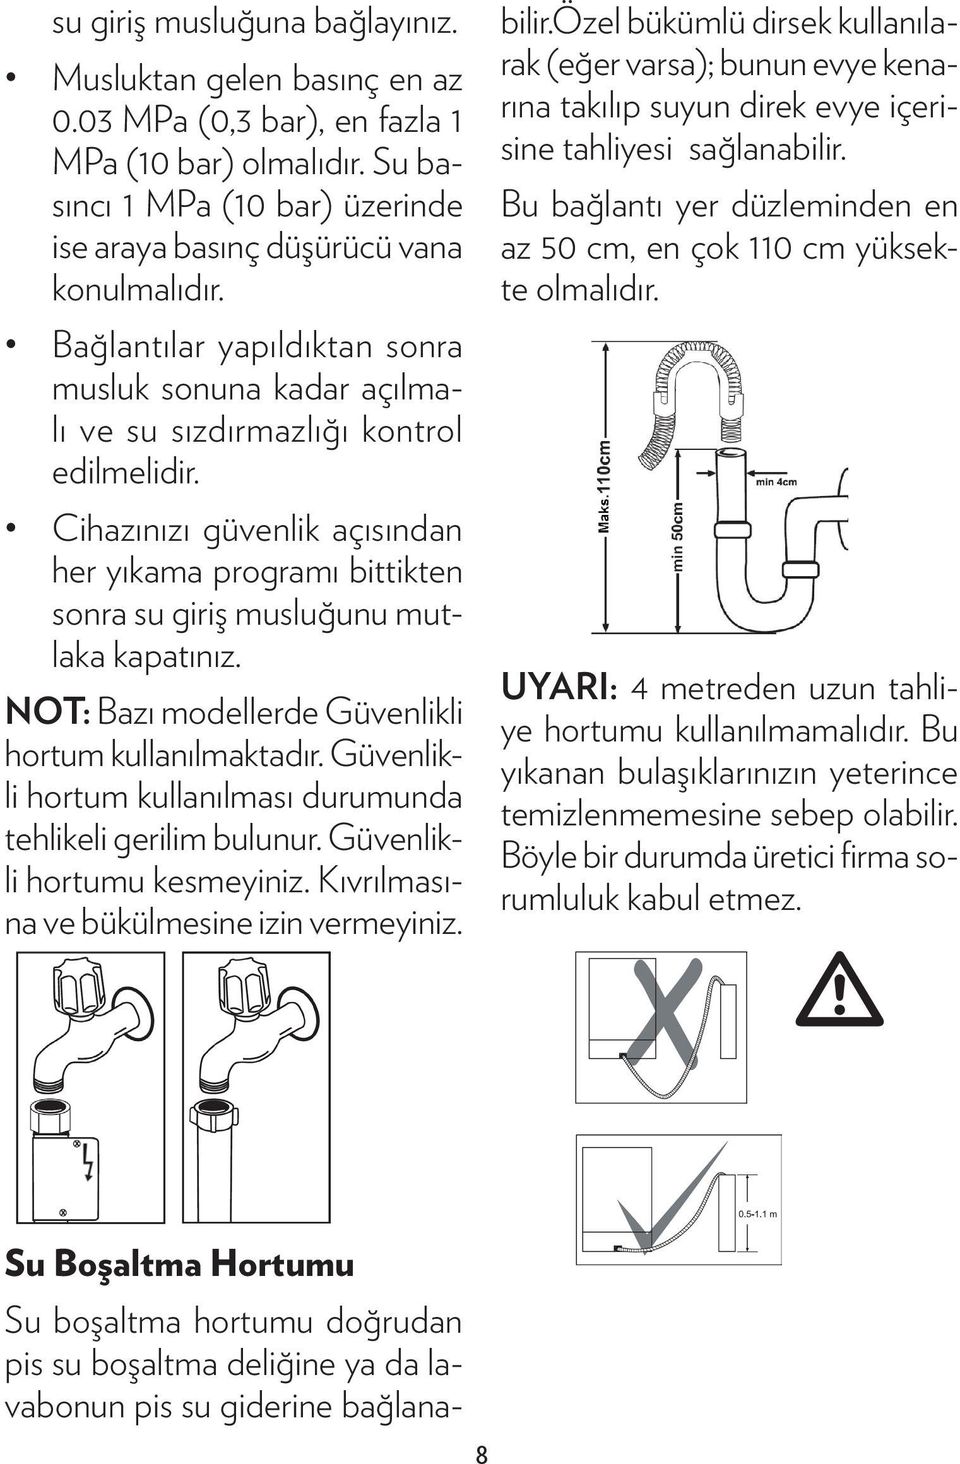 Cihazınızı güvenlik açısından her yıkama programı bittikten sonra su giriş musluğunu mutlaka kapatınız. NOT: Bazı modellerde Güvenlikli hortum kullanılmaktadır.